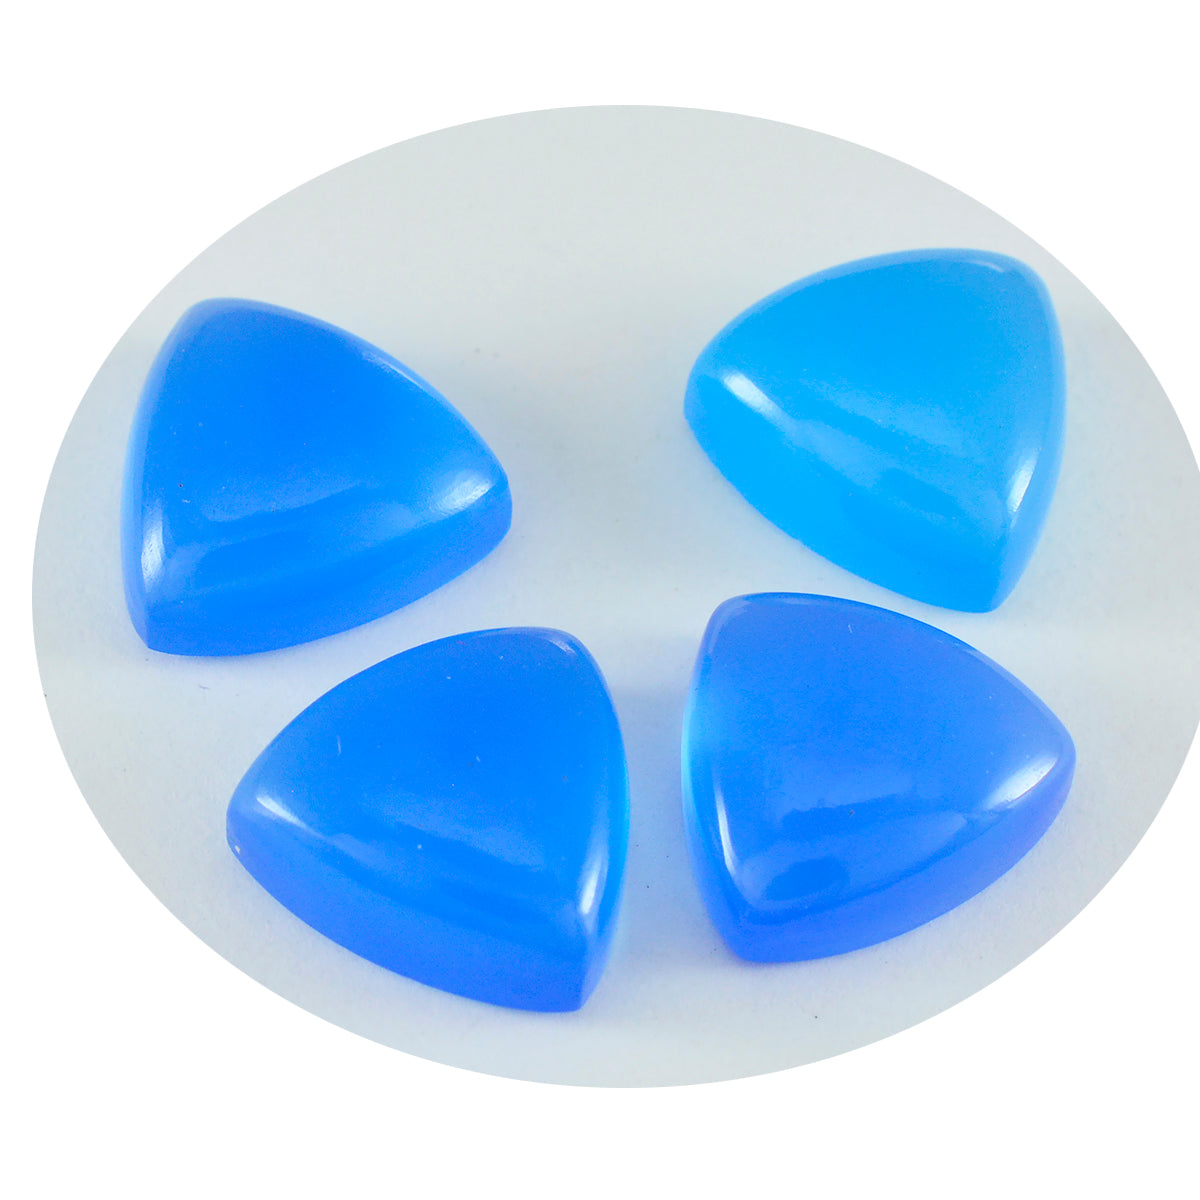 Riyogems 1PC Blue Chalcedony Cabochon 9x9 mm Trillion Shape cute Quality Loose Gemstone